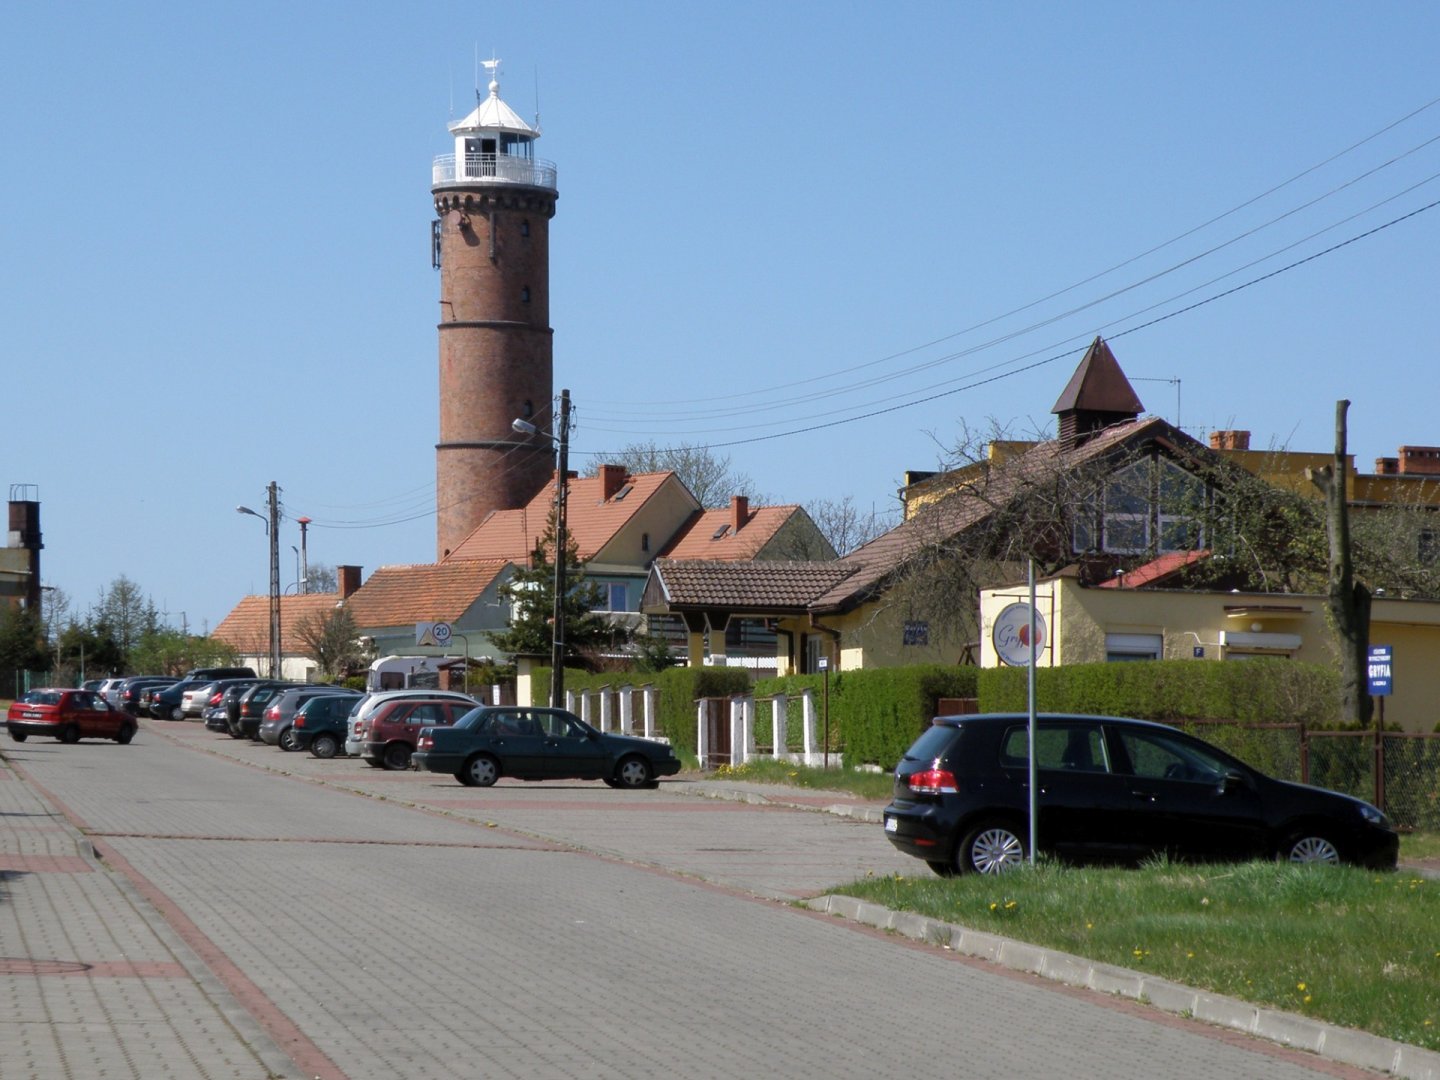 Polish Lighthouses